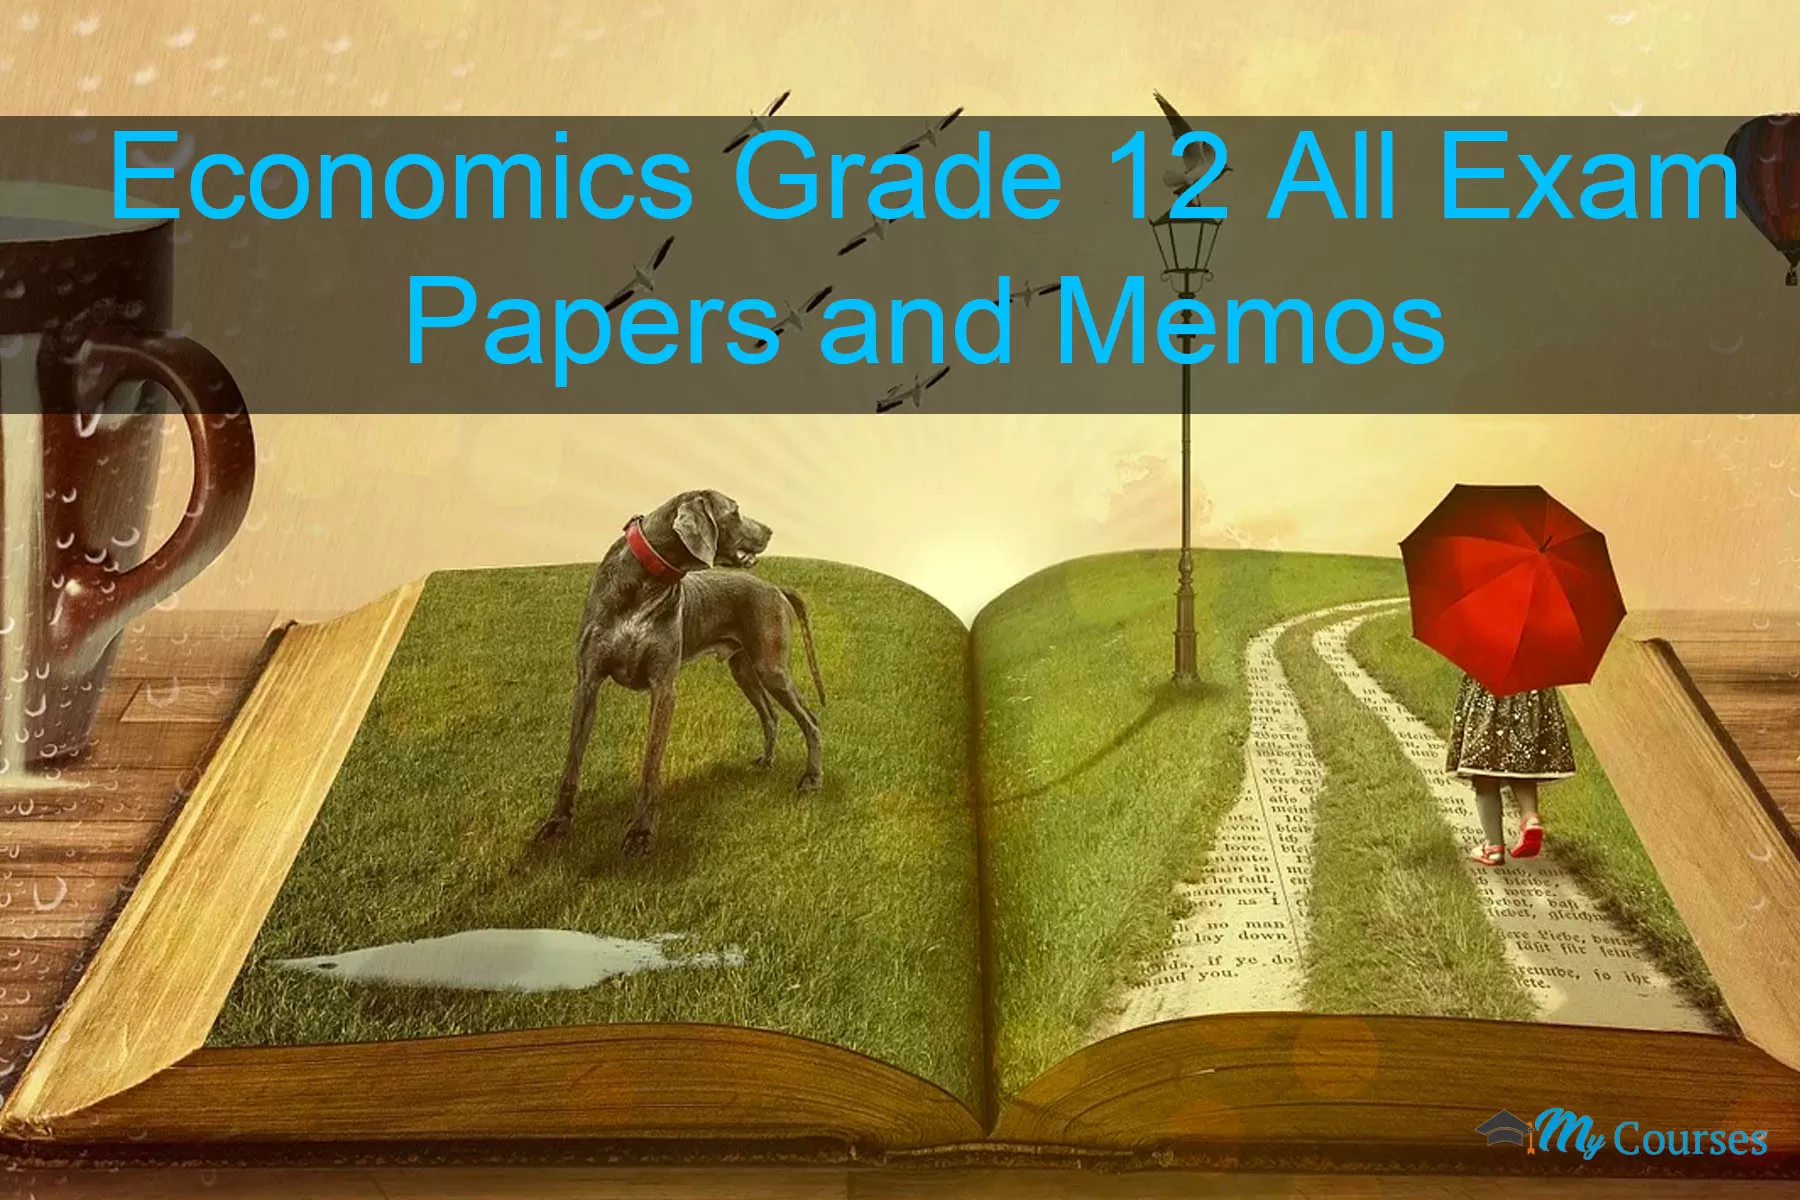 Economics Grade 12 All Exam Papers and Memos